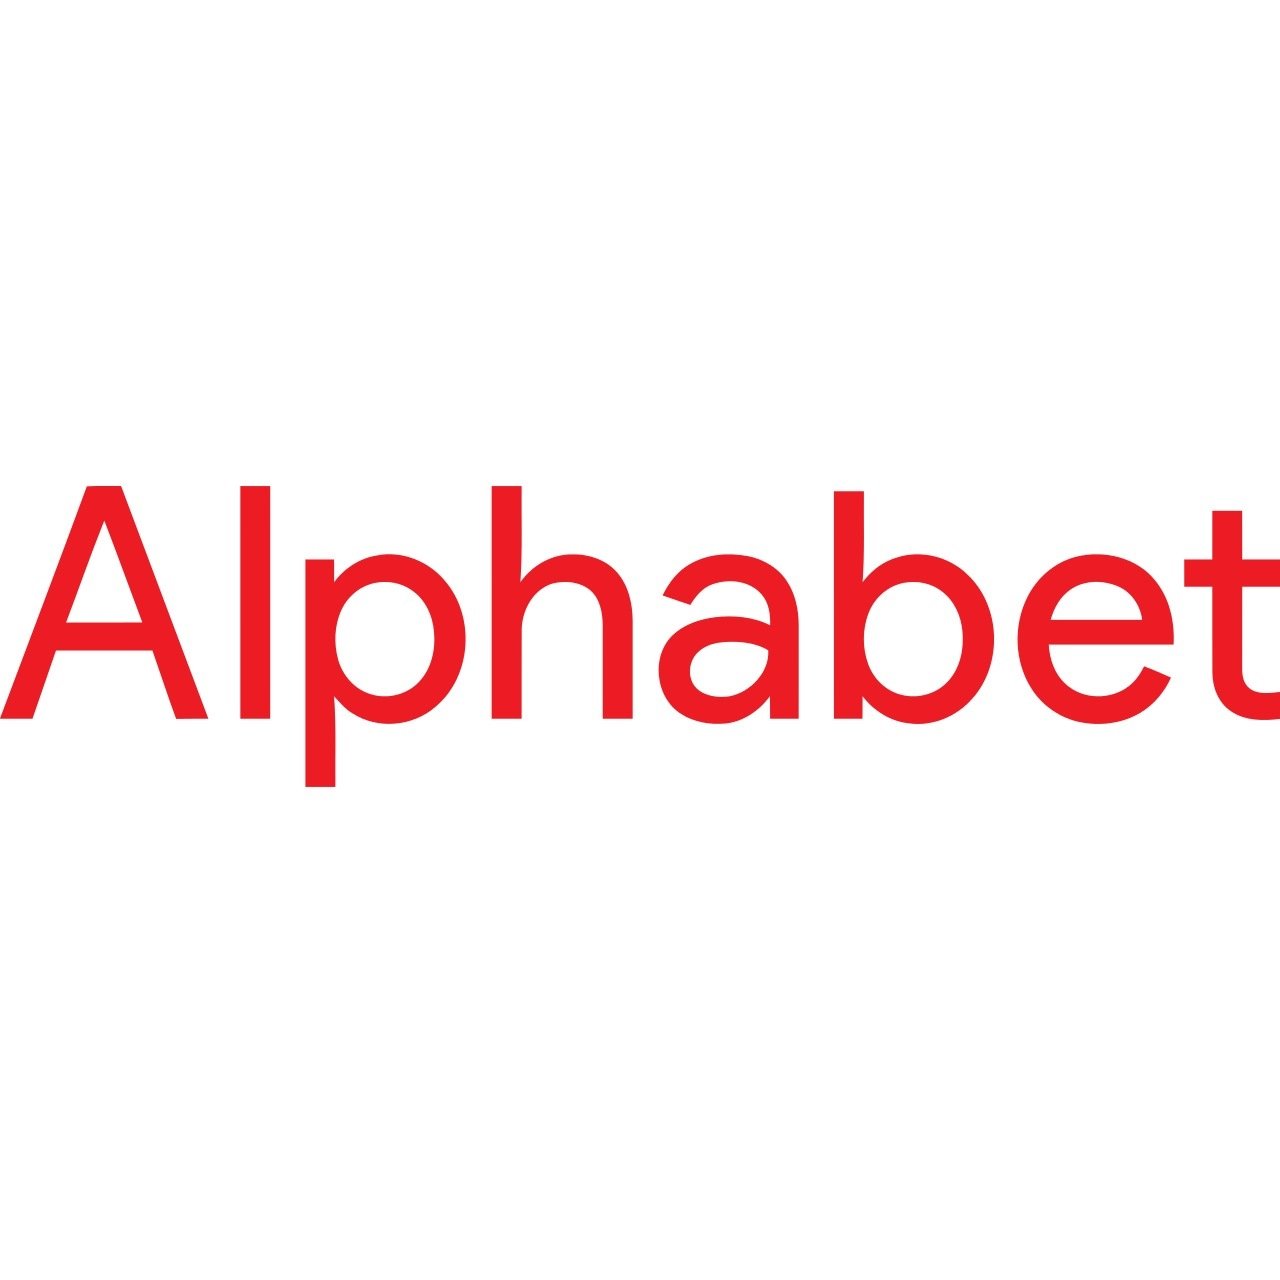 Alphabet logo 2015